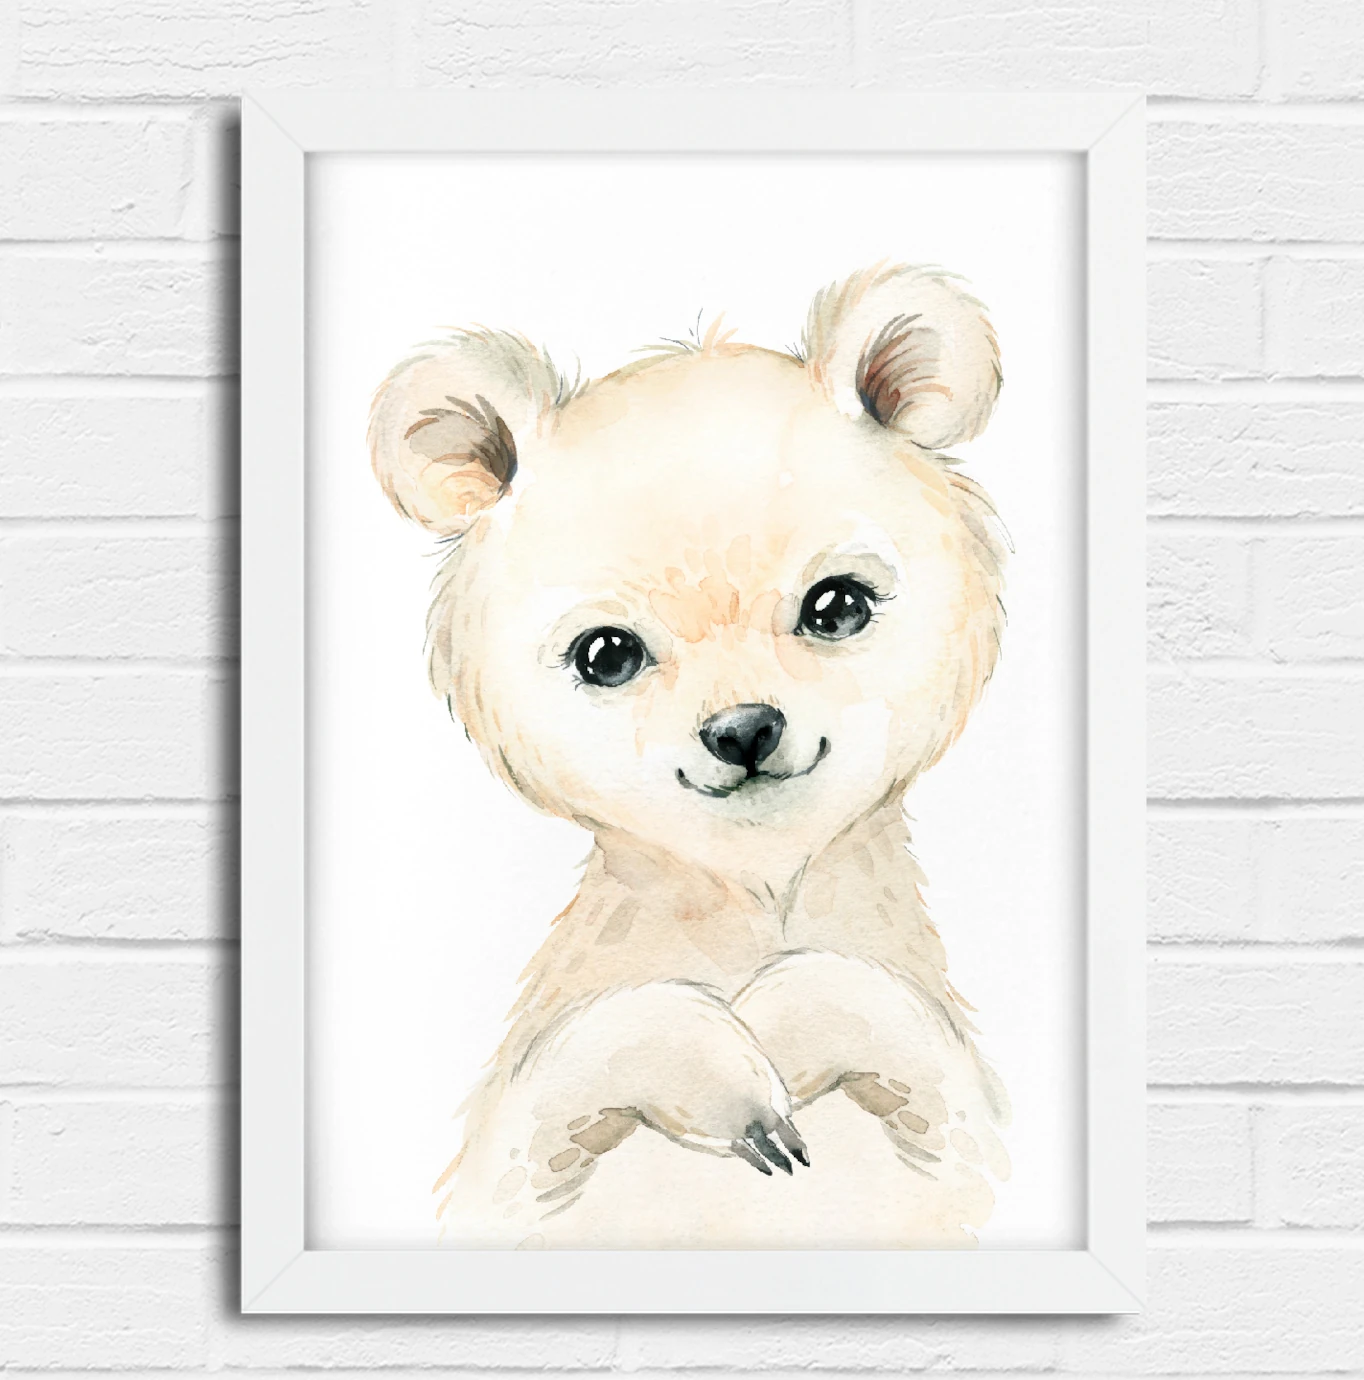 Quadro Decorativo Infantil Urso Panda Aquarela Safari SKU: 2262g2